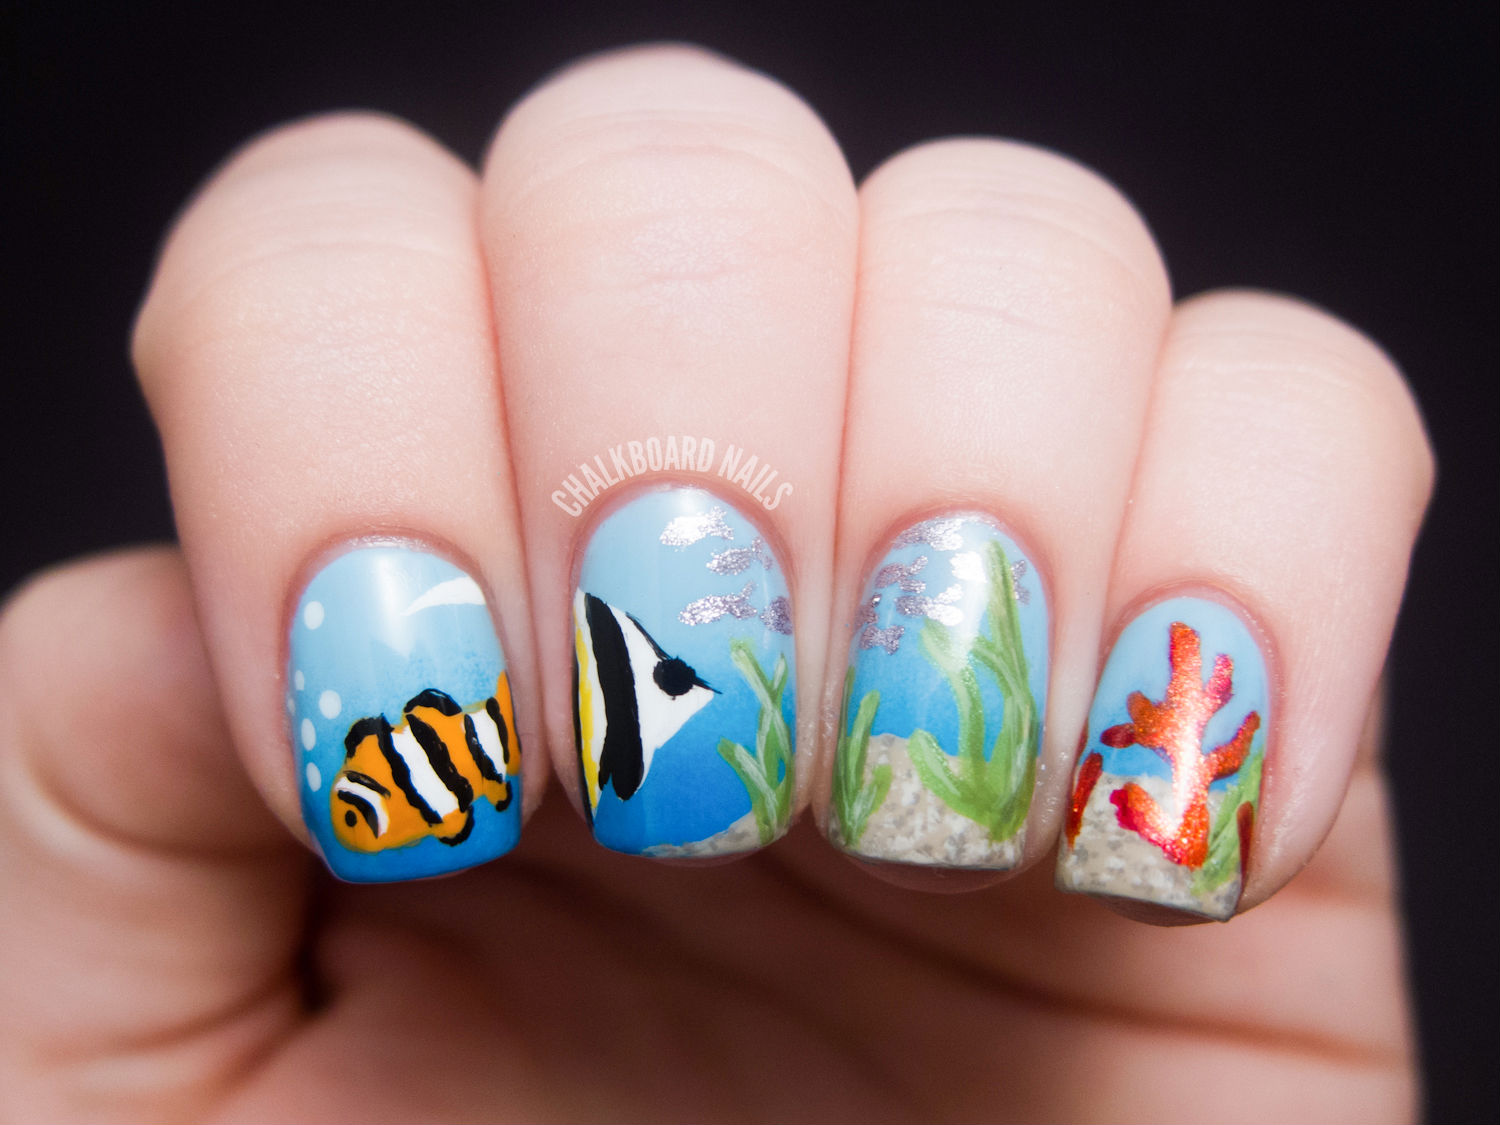 Amazing Nails!